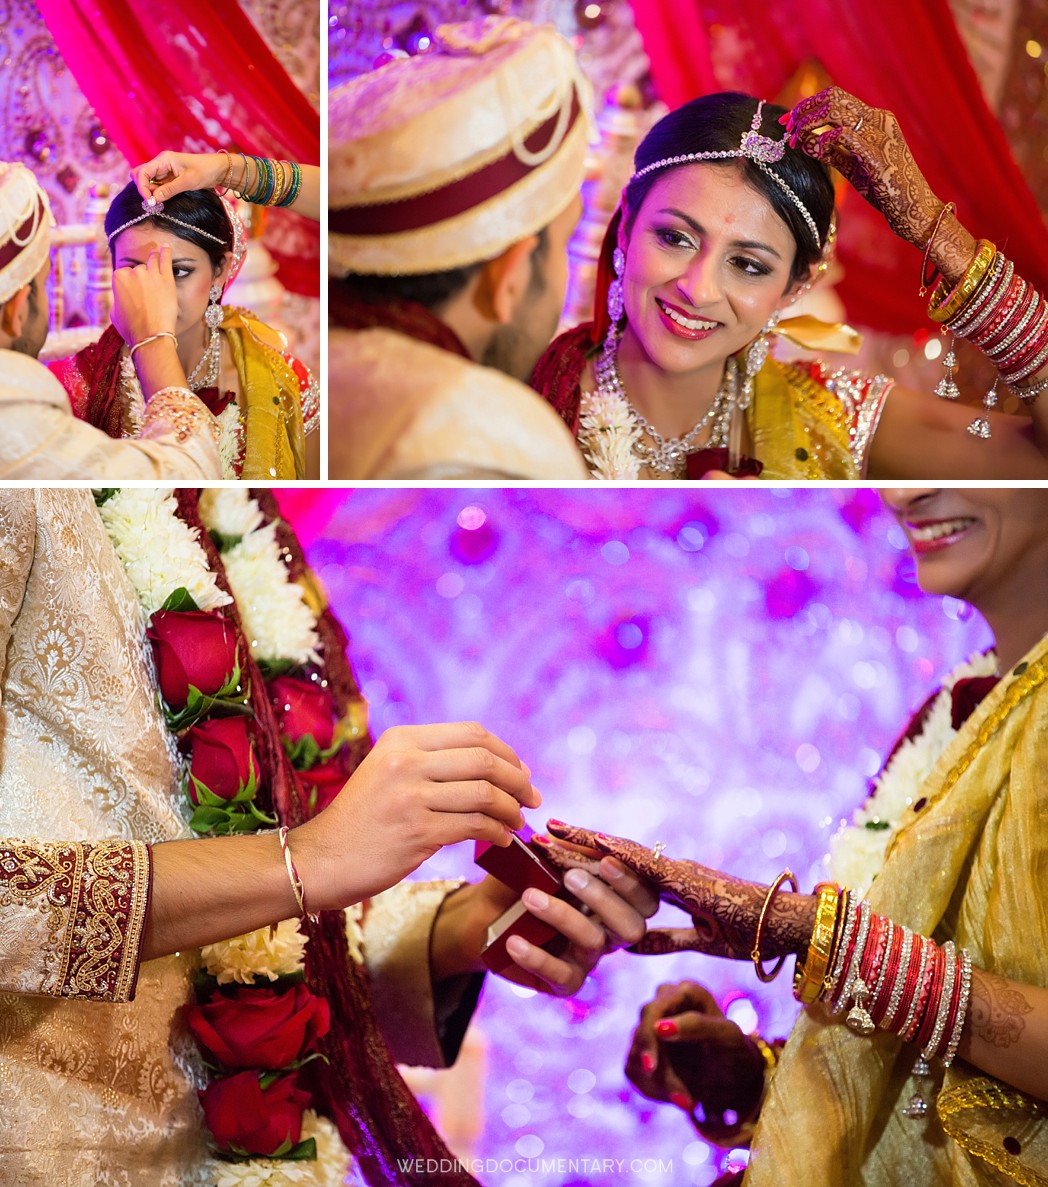 Jain_Temple_Hindu_Indian_Wedding_Photos_0021.jpg